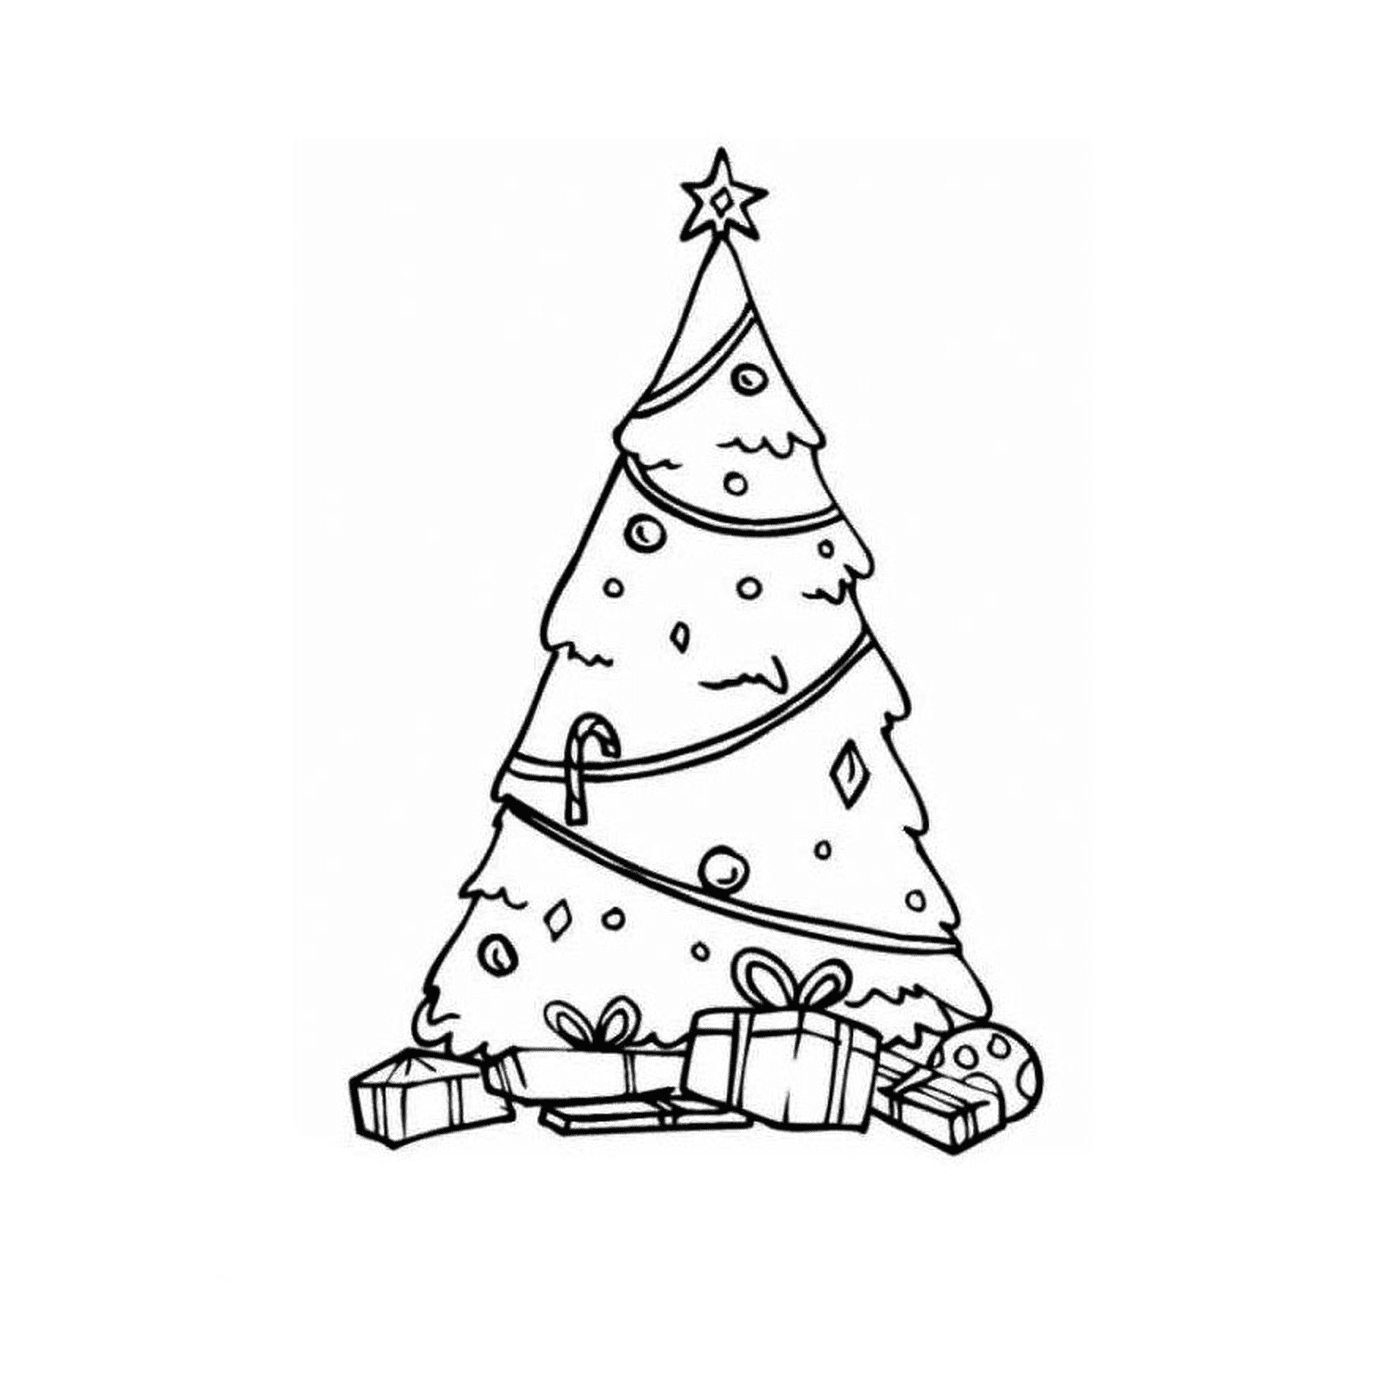  एक क्रिसमस का पेड़ जिसमें तोहफे ऊपर दिए गए हैं 